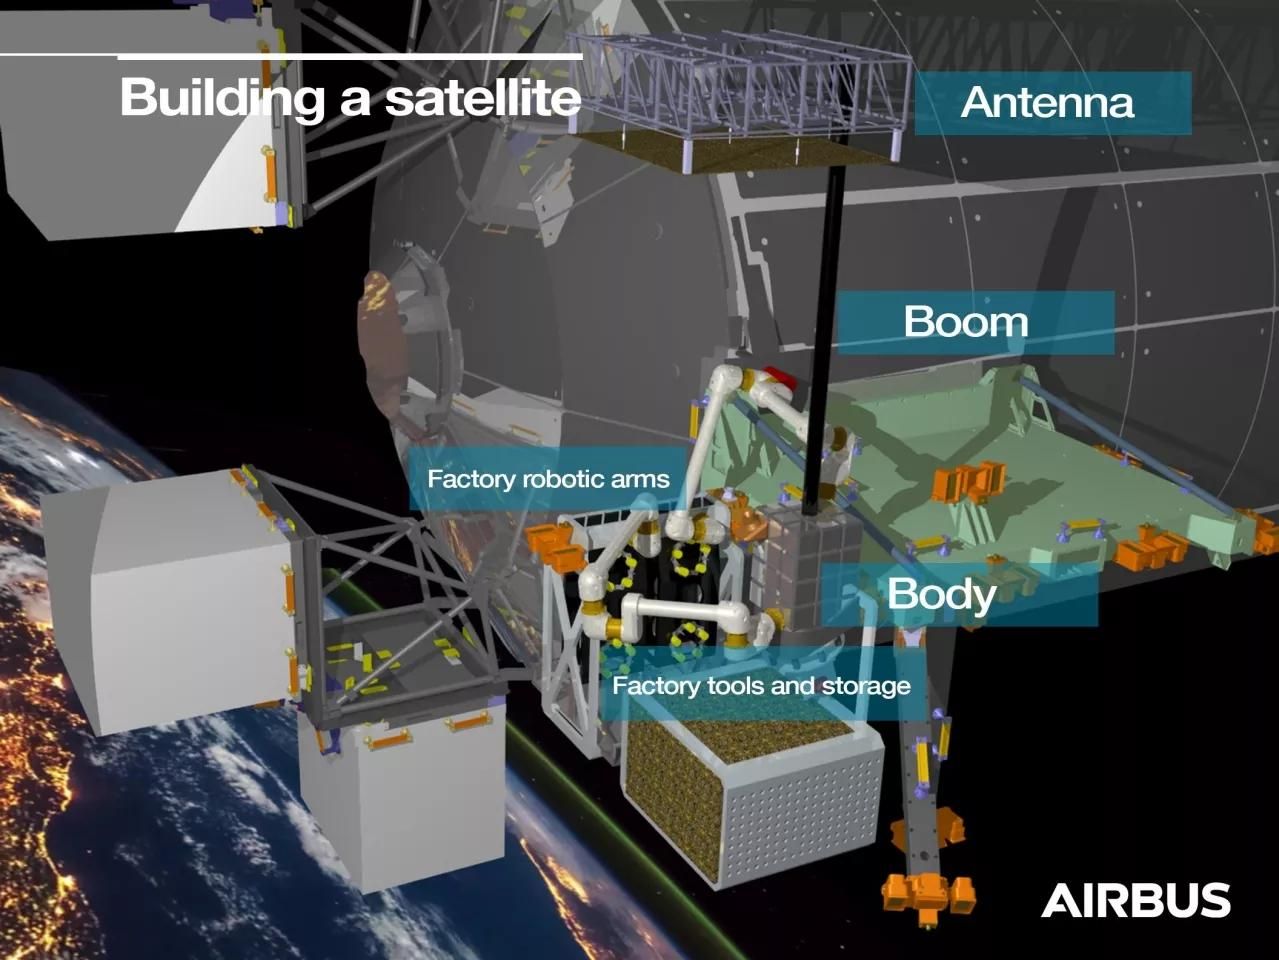 Airbus построит на орбите фабрику, которая будет собирать спутники